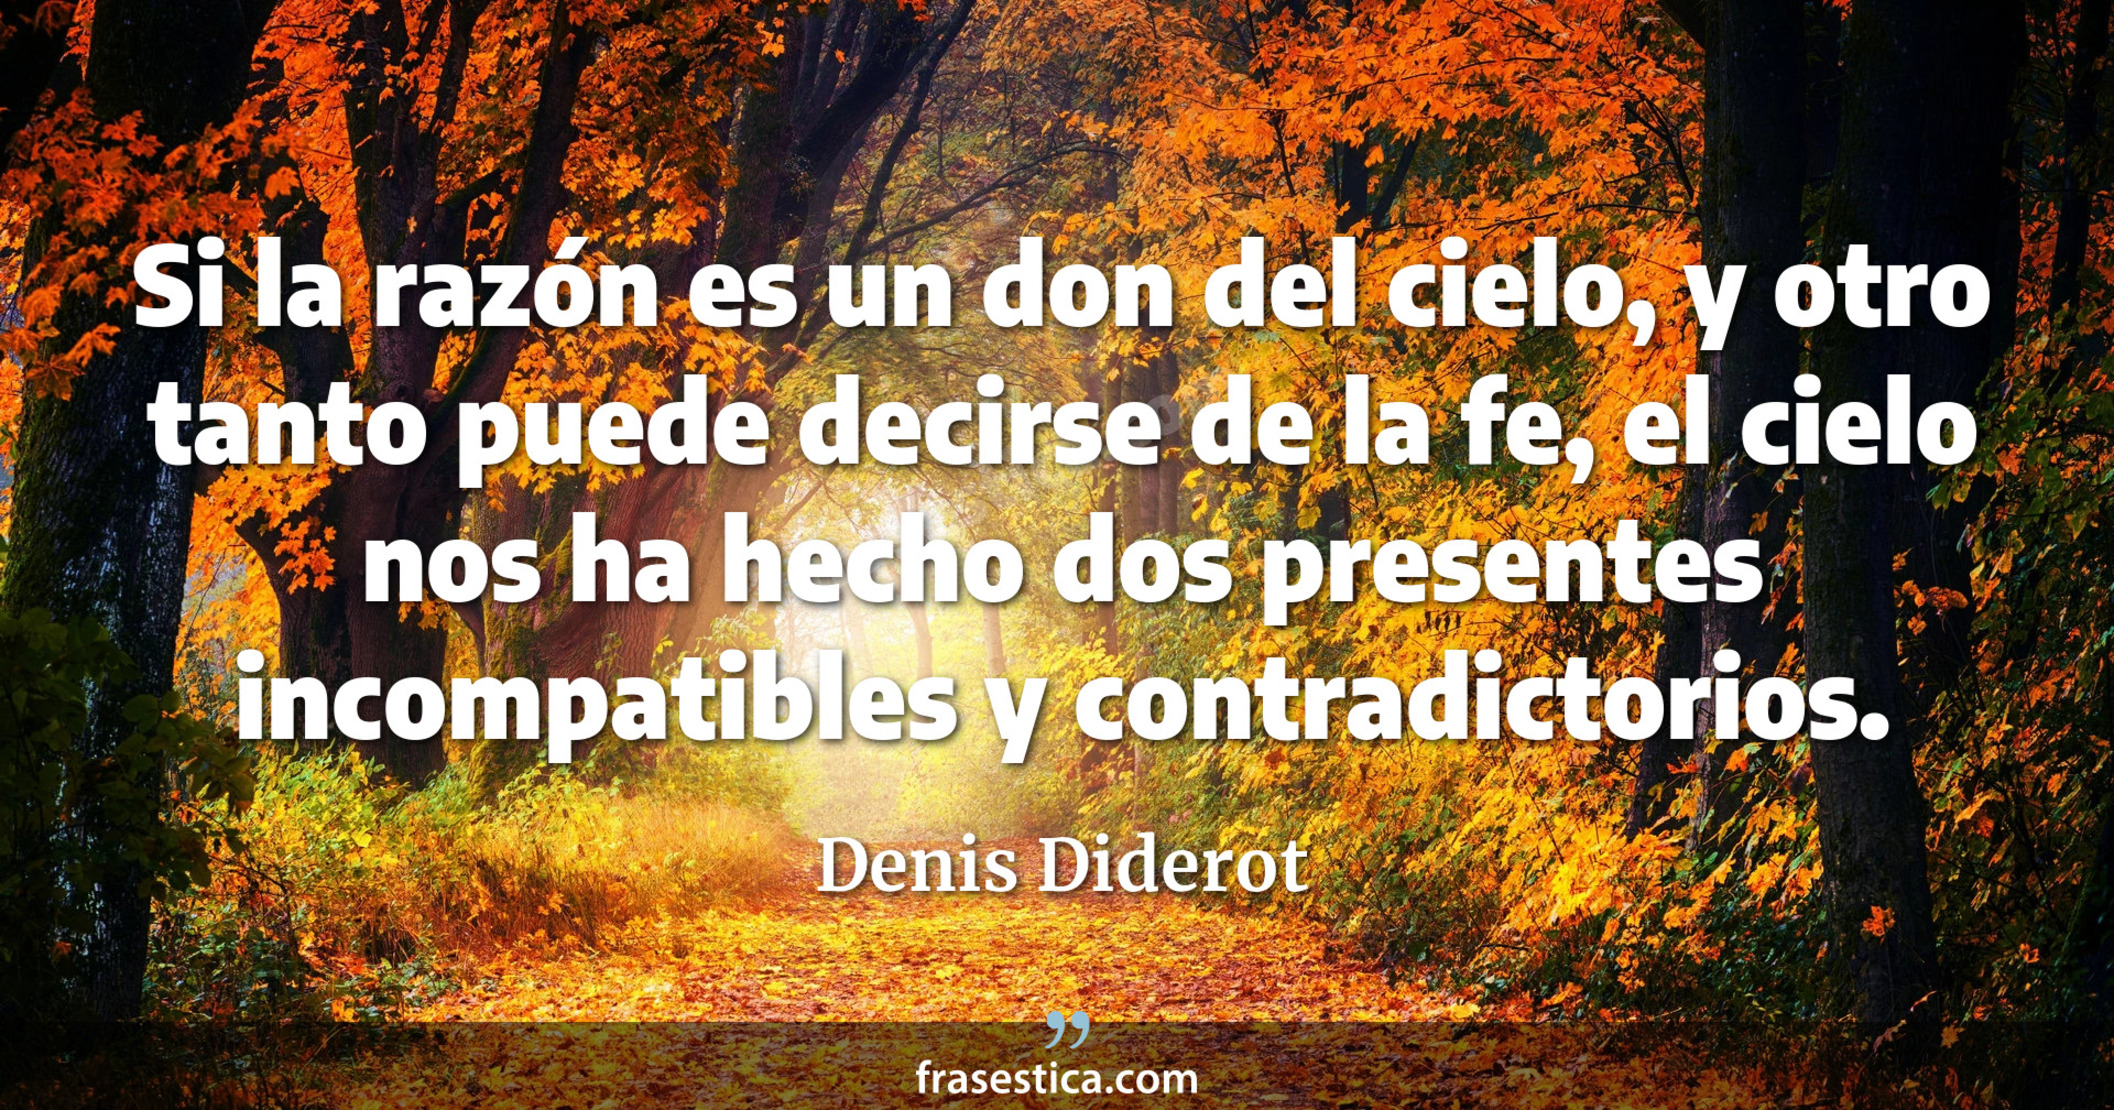 Si la razón es un don del cielo, y otro tanto puede decirse de la fe, el cielo nos ha hecho dos presentes incompatibles y contradictorios. - Denis Diderot